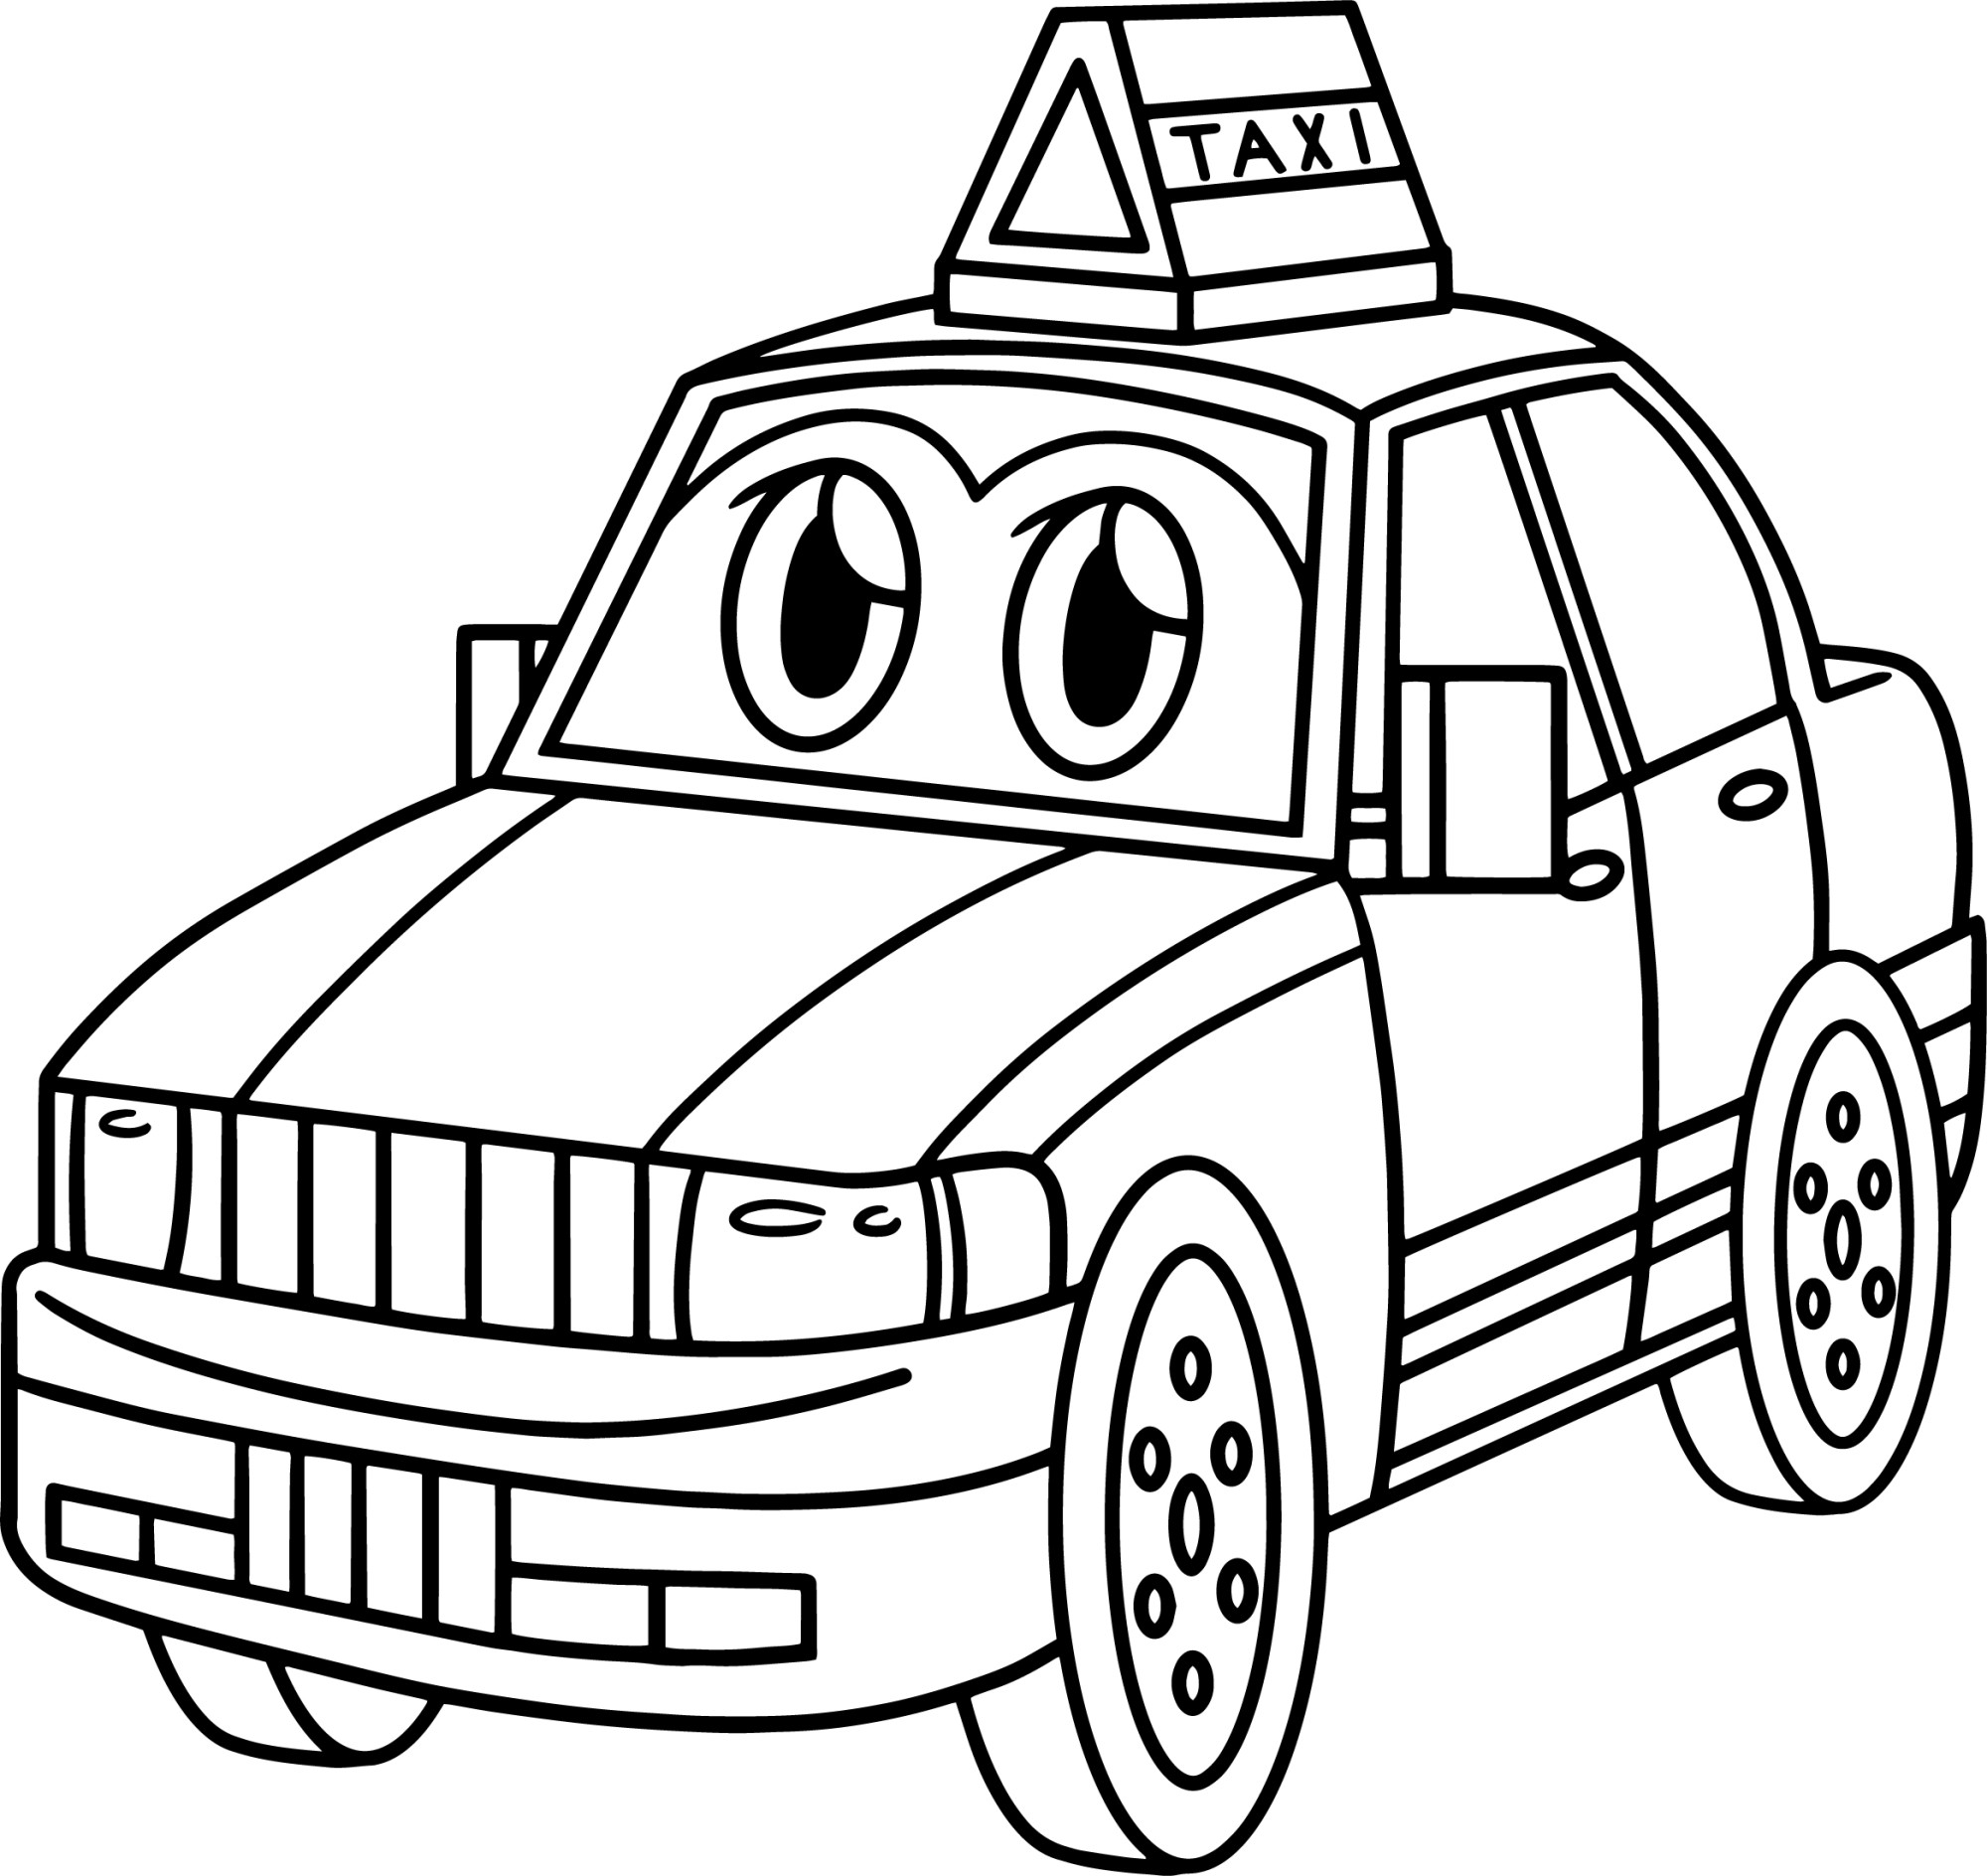 Раскраска для детей: легковушка такси